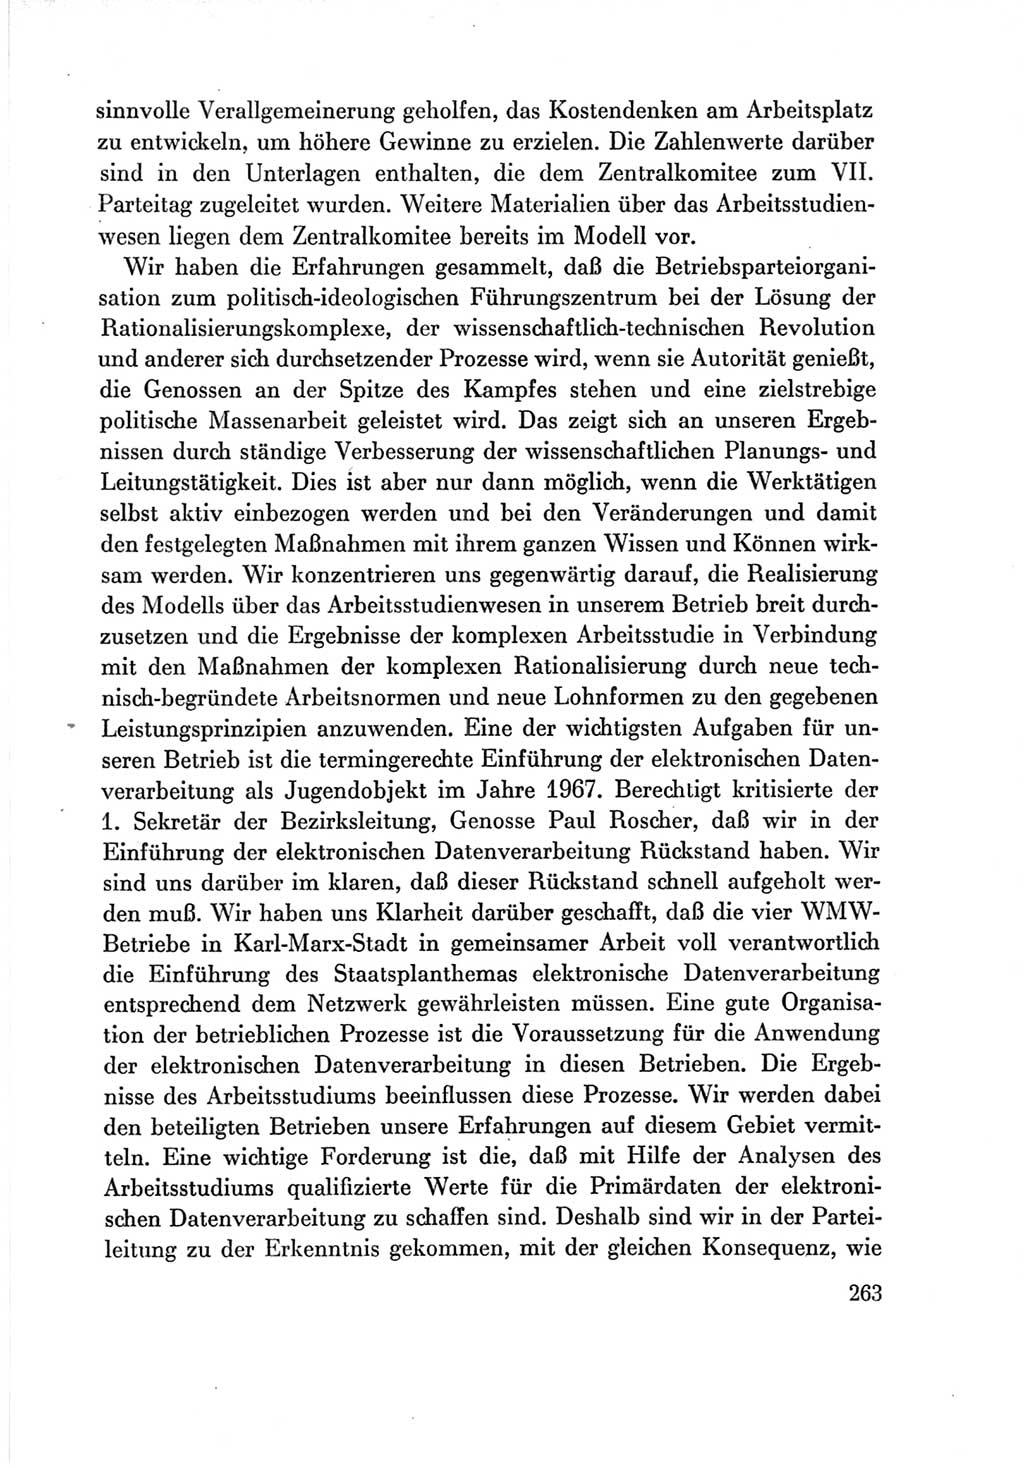 Protokoll der Verhandlungen des Ⅶ. Parteitages der Sozialistischen Einheitspartei Deutschlands (SED) [Deutsche Demokratische Republik (DDR)] 1967, Band Ⅲ, Seite 263 (Prot. Verh. Ⅶ. PT SED DDR 1967, Bd. Ⅲ, S. 263)